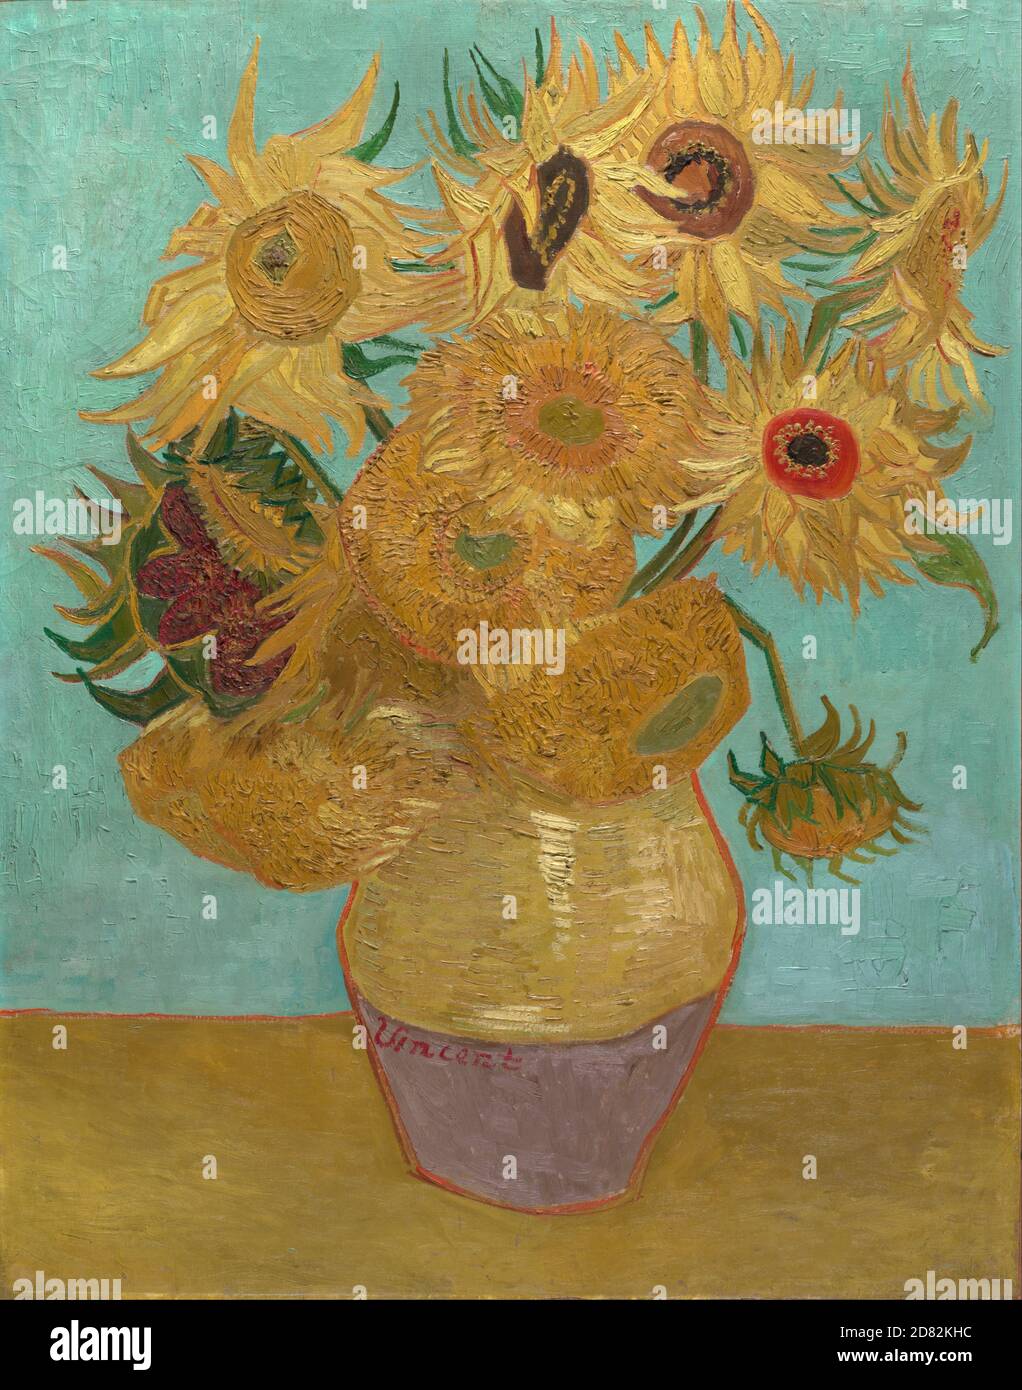 Título: Girasoles Creador: Vincent van Gogh Fecha: 1888 Medio: Óleo sobre lienzo Dimensiones: 91 x 72 cm ubicación: Neue Pinakothek, Munich, Alemania Foto de stock